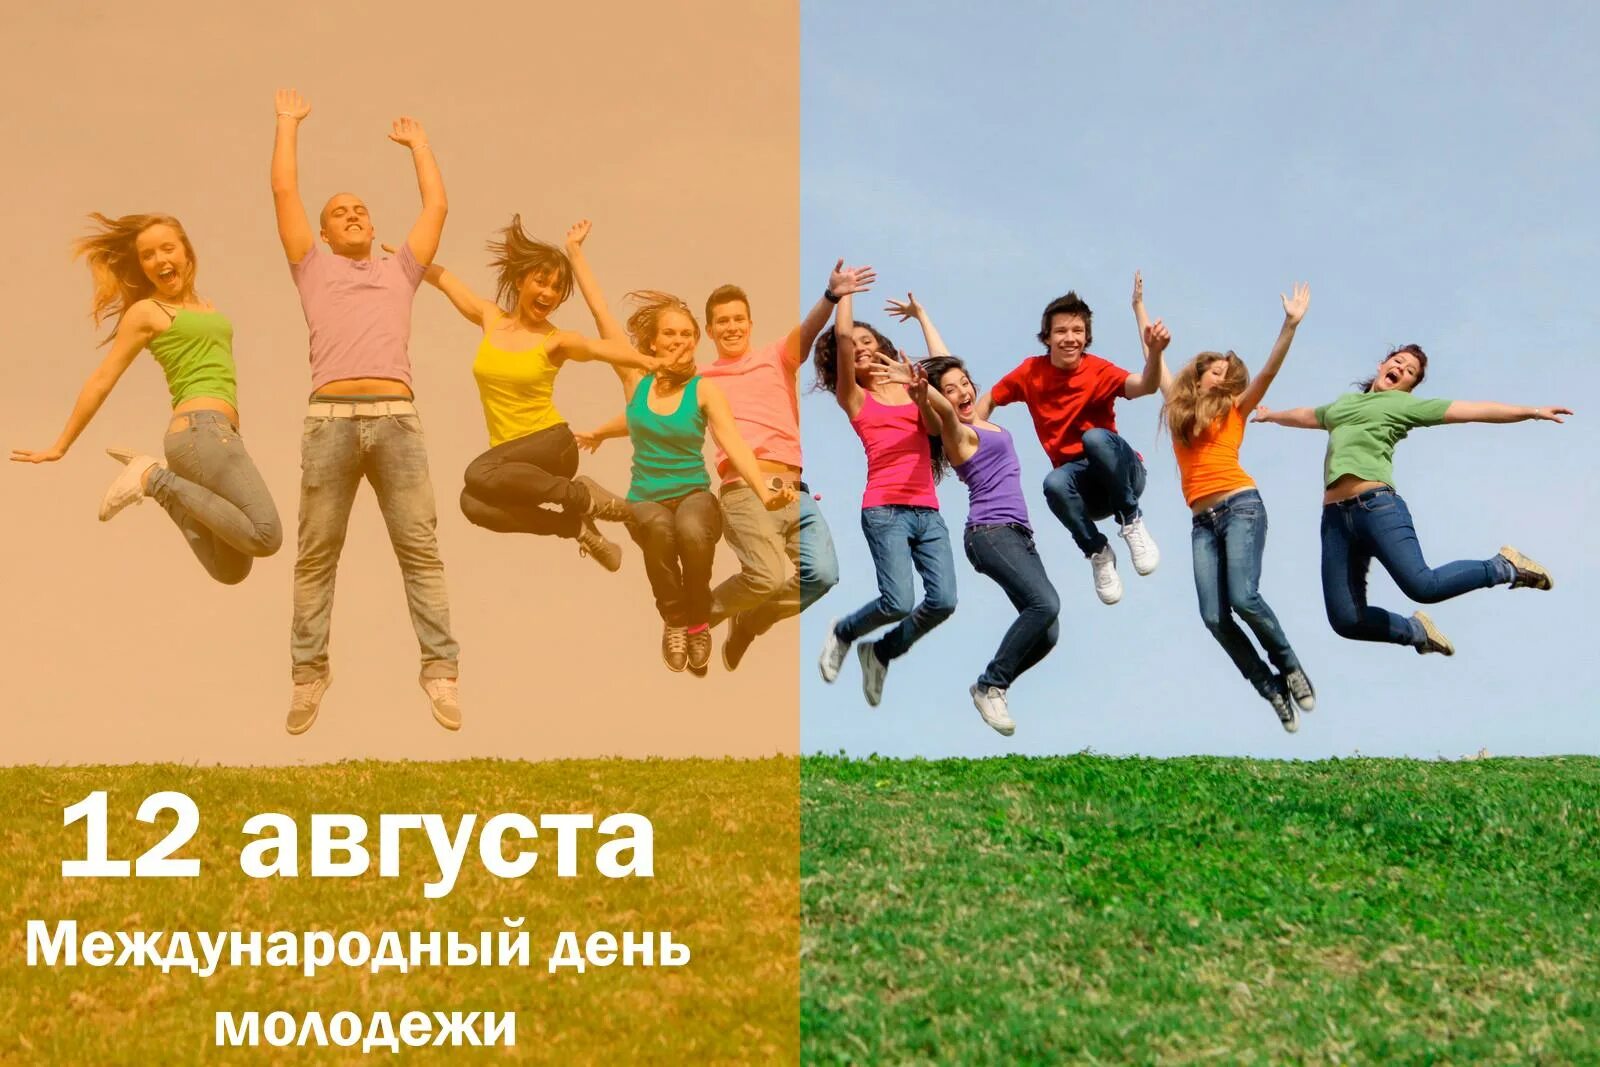 Международный день молодежи. С днем молодежи. Международный день молодежи 12 августа. День молодёжи (Россия). С 12 августа изменения